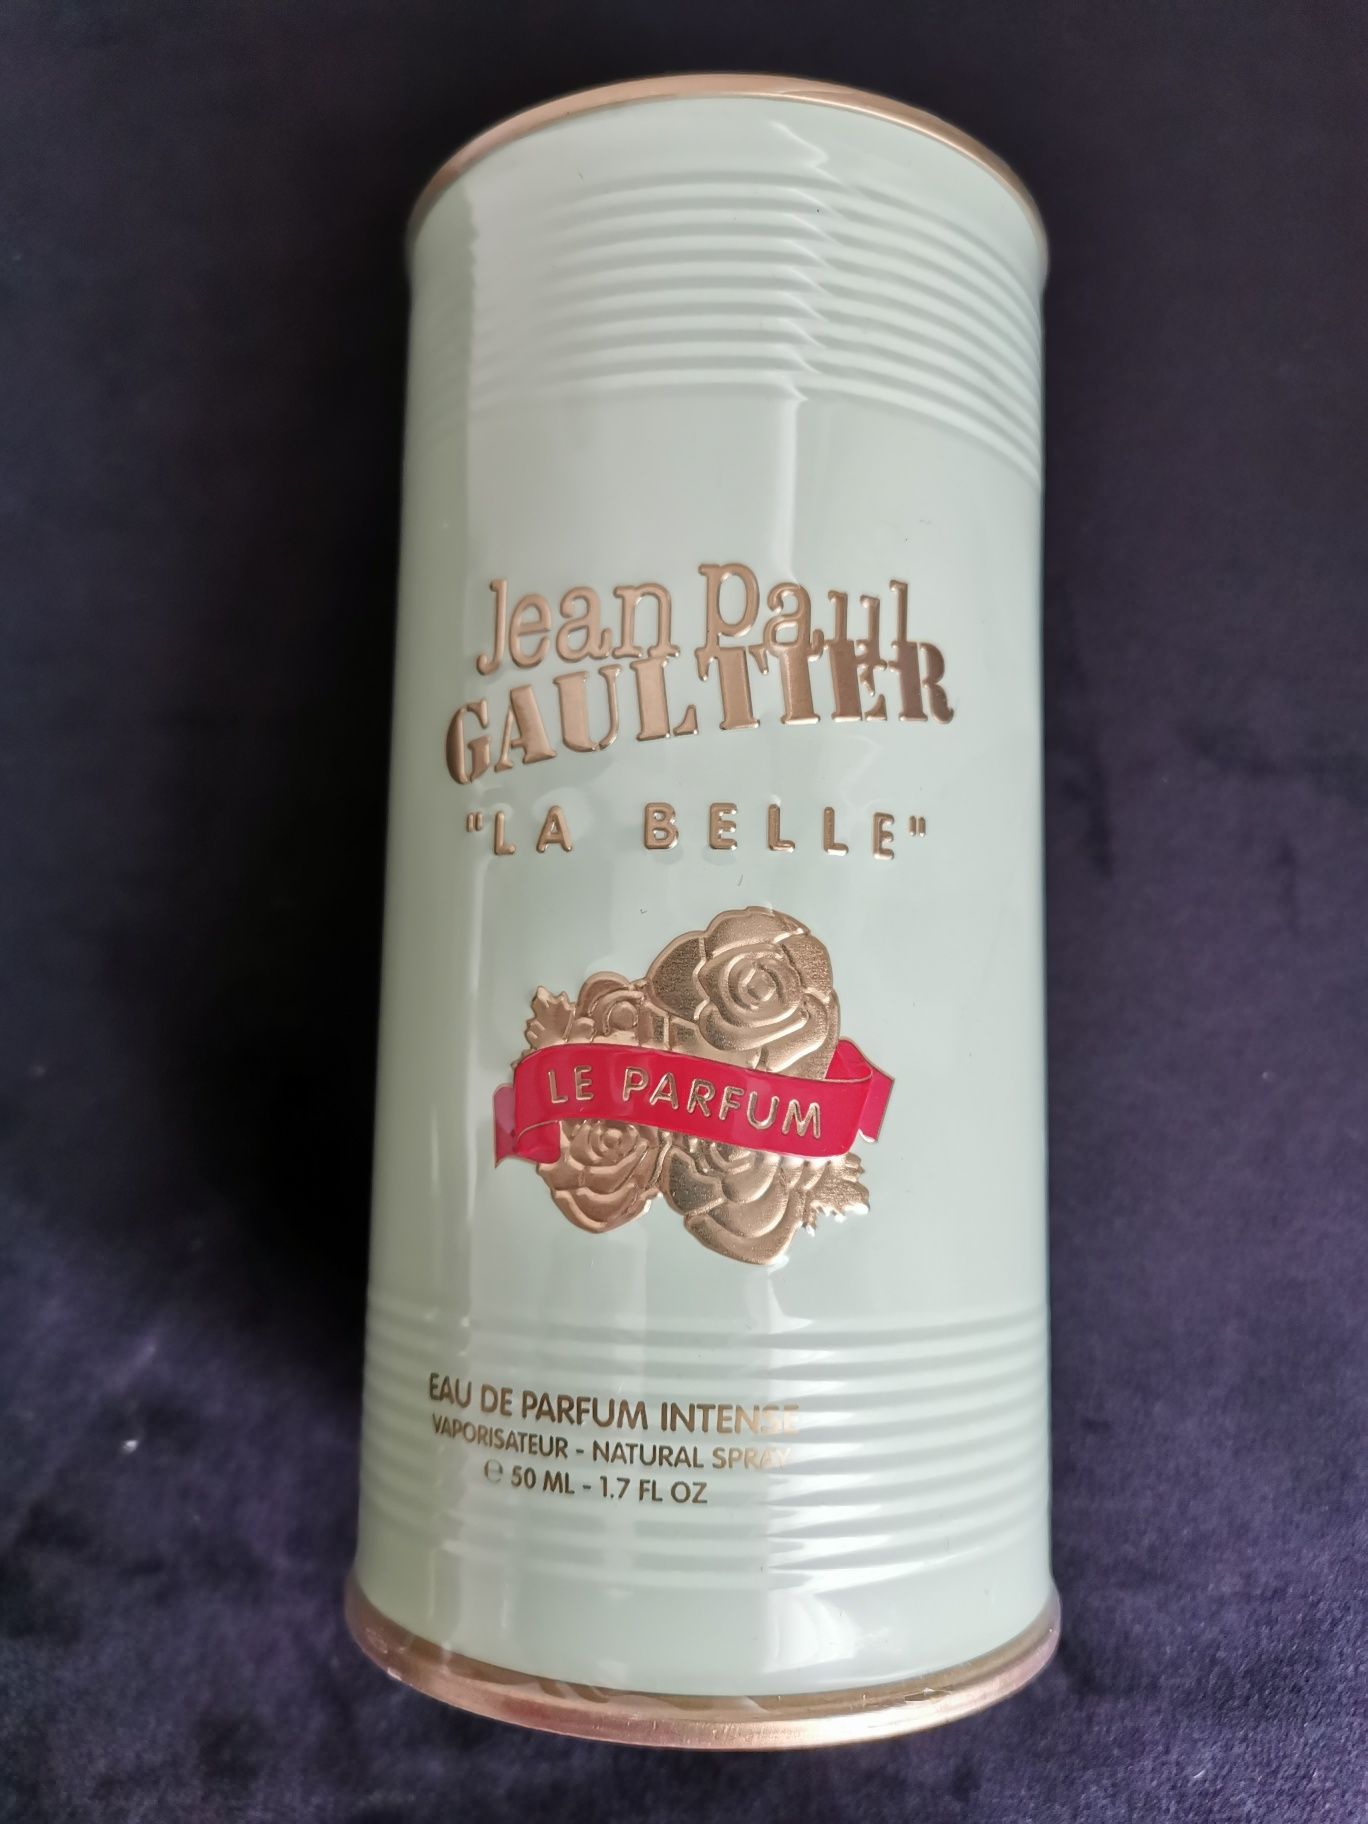 La Belle apa de parfum 50 ml
Jean Paul Gaultier La Belle Le Parfum Eau